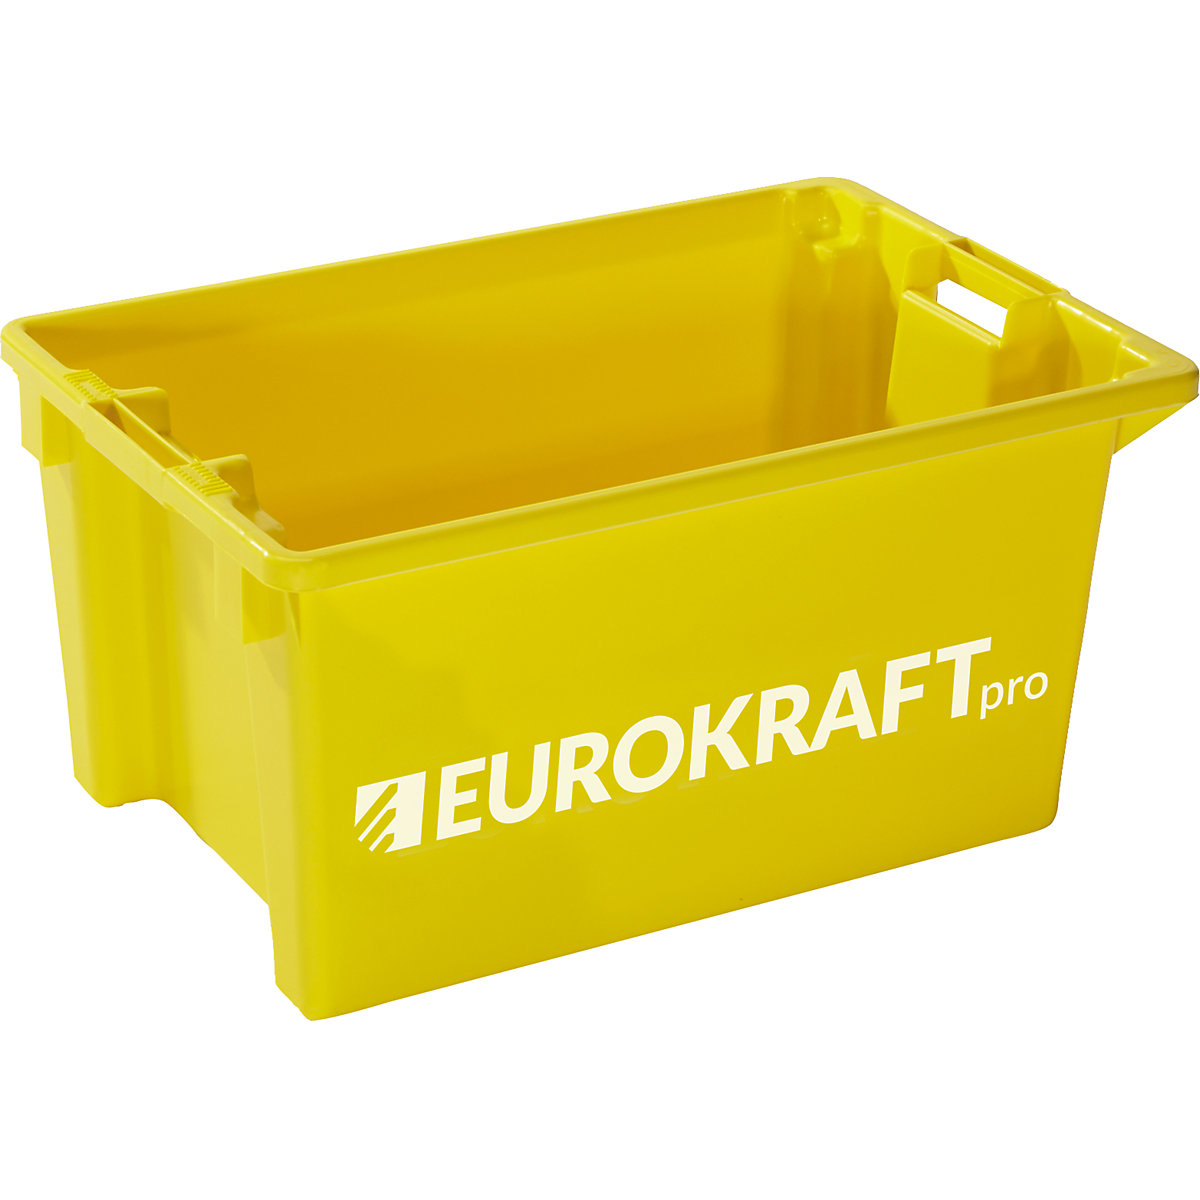 EUROKRAFTpro – Otočná stohovacia nádoba, objem 50 l, balenie po 3 kusy, žltá